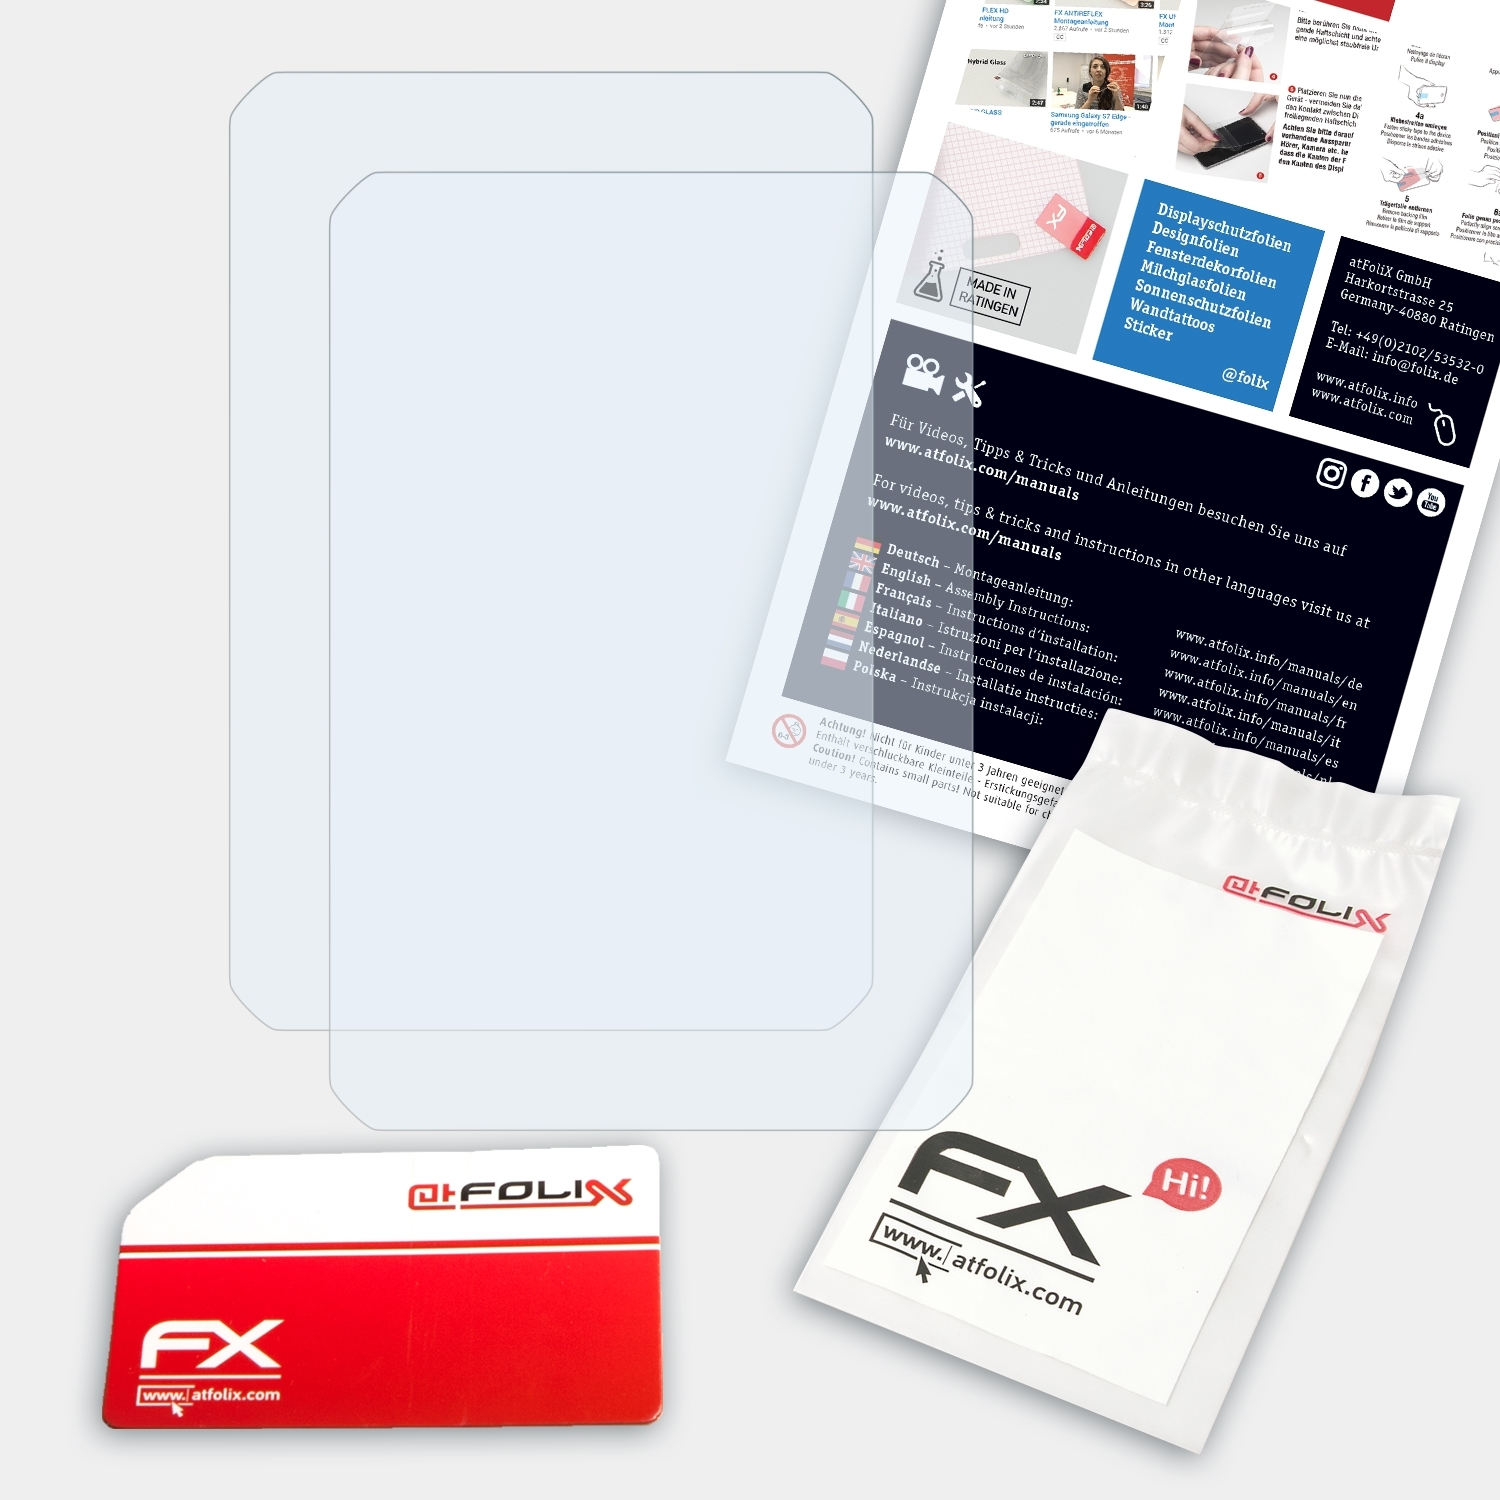 ATFOLIX 2x FX-Clear Displayschutz(für RugGear RG900)